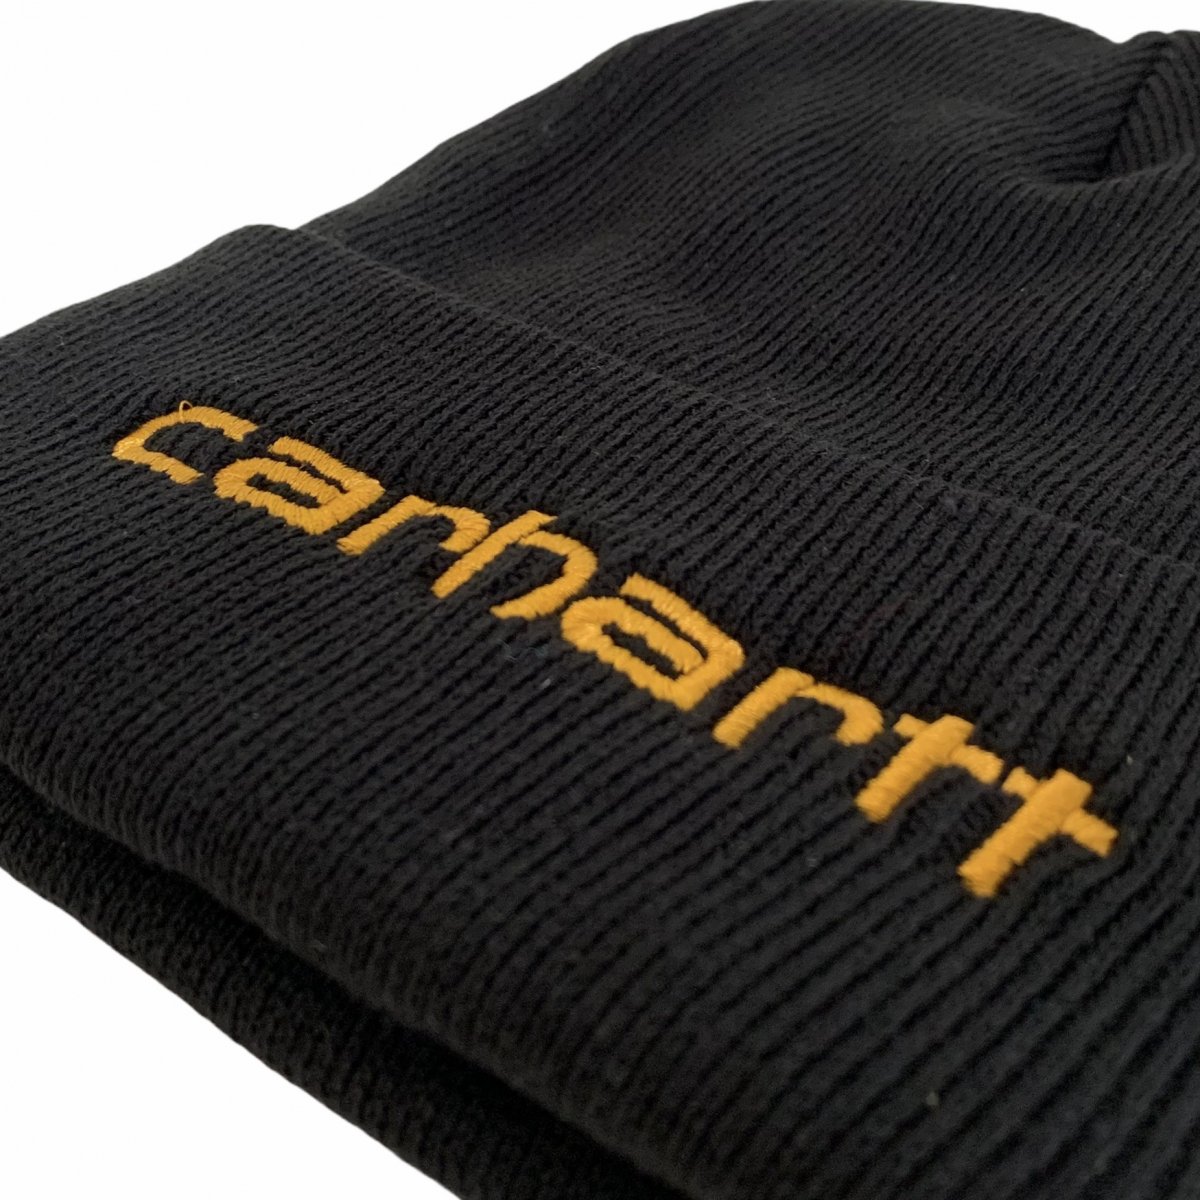 新品 US企画 Carhartt Teller Hat (BLACK) カーハート テラーハット ニットキャップ ニット帽 ビーニー  THINSULATE シンサレート 黒 ブラック 104068 - NEWJOKE ONLINE STORE